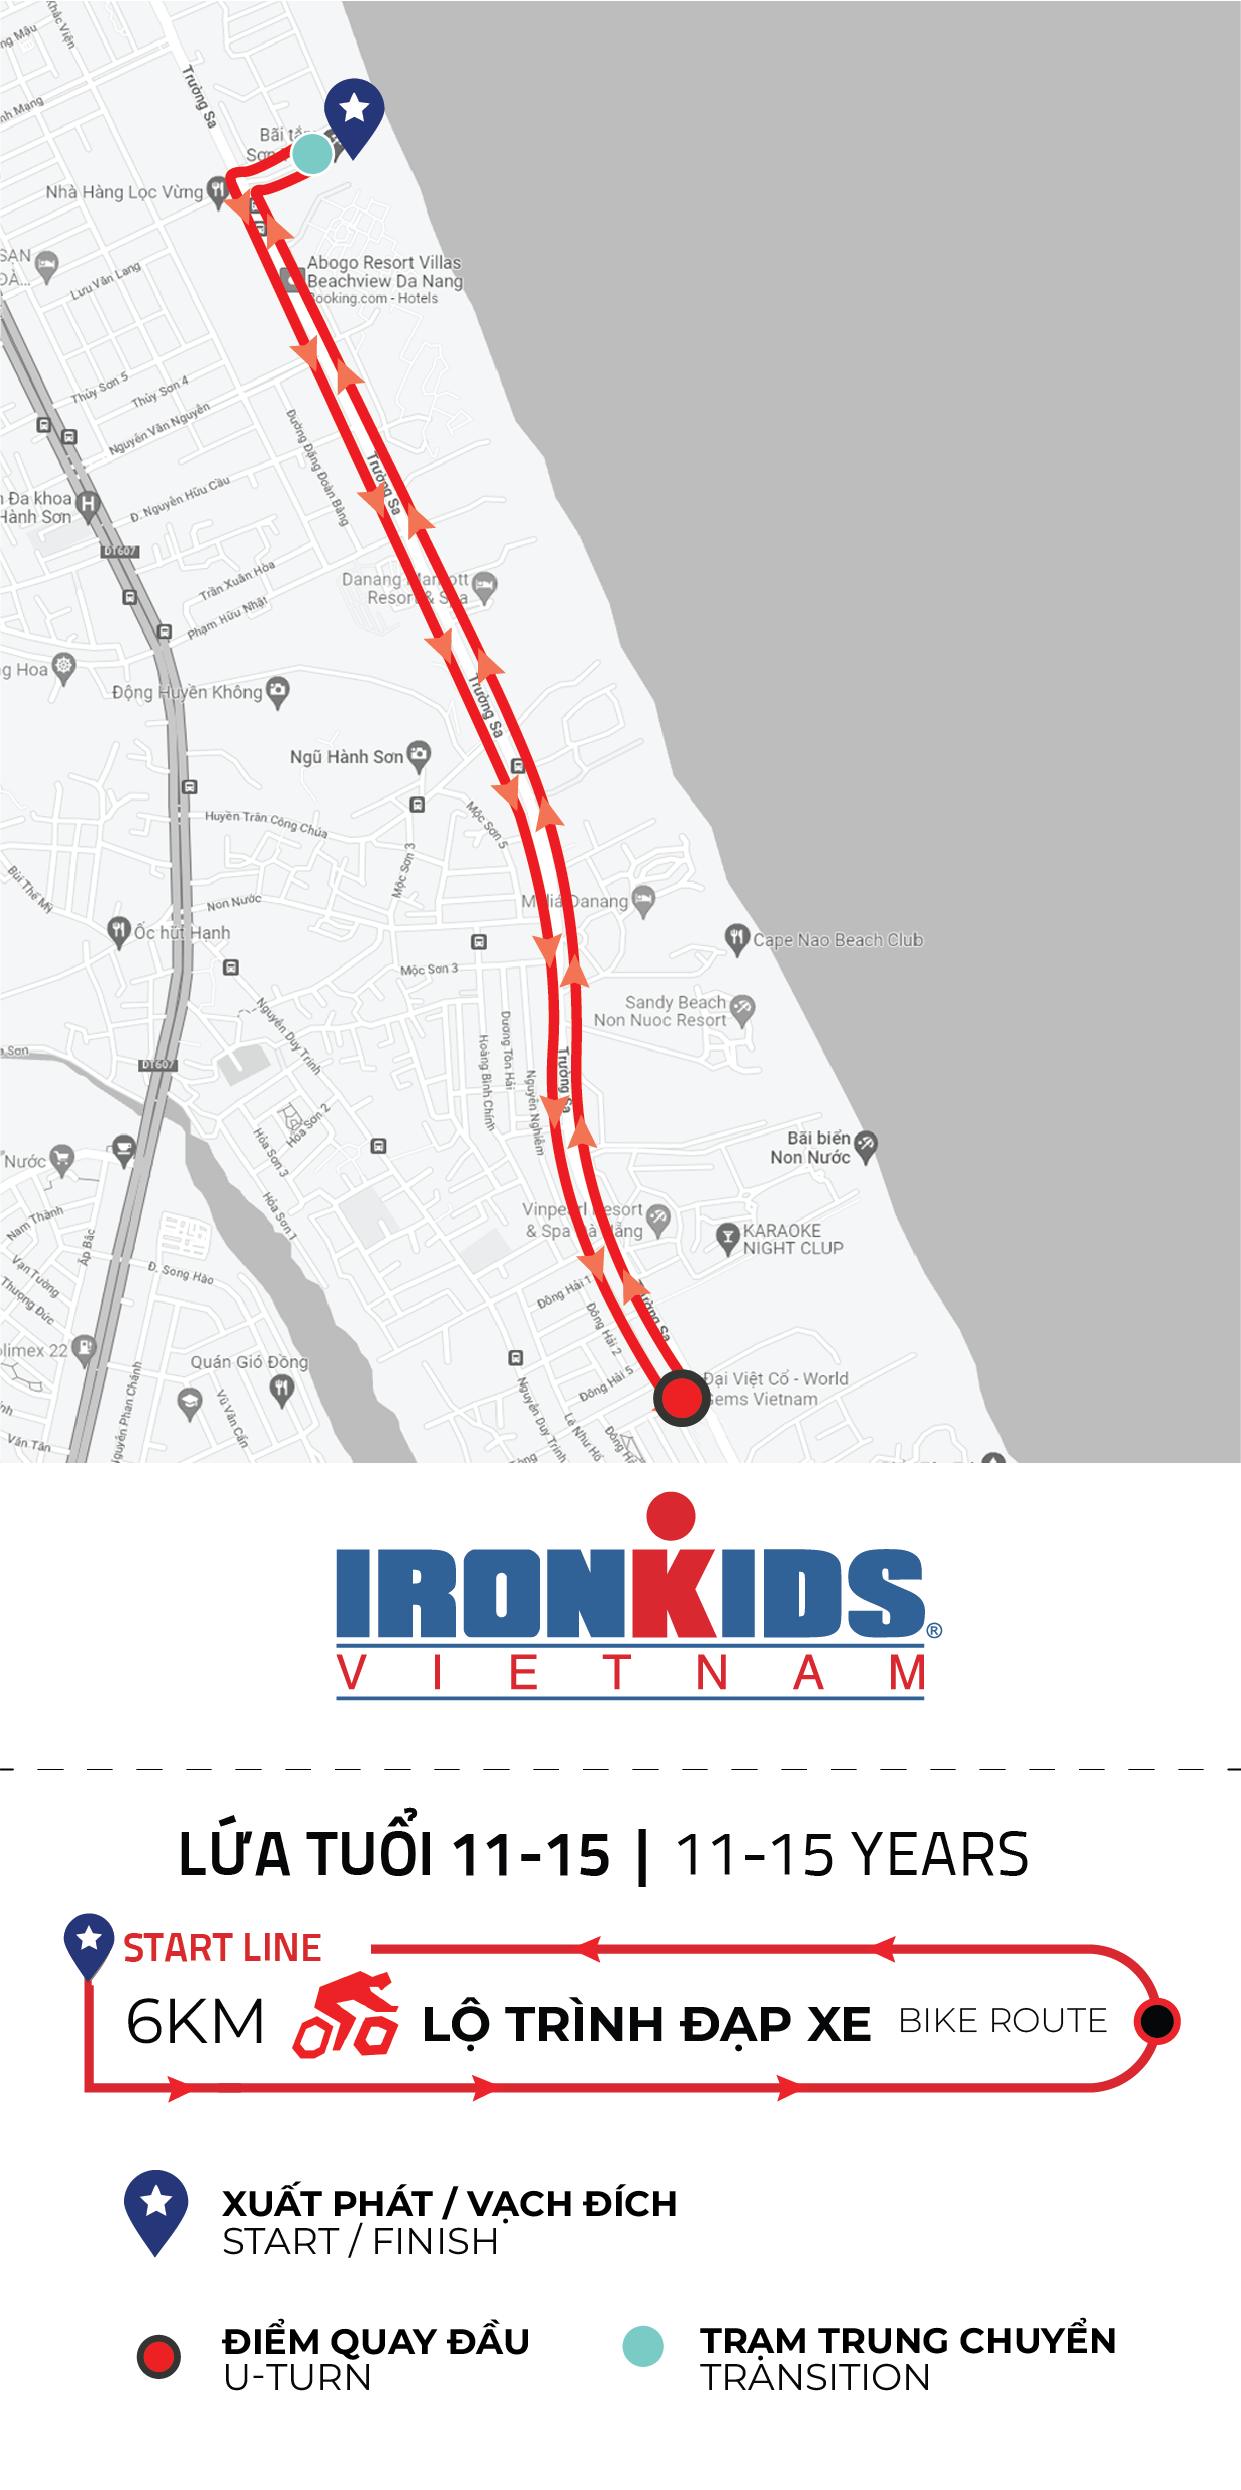 IRONKIDS Viet Nam 2023 - 11-14 years - Bike Course